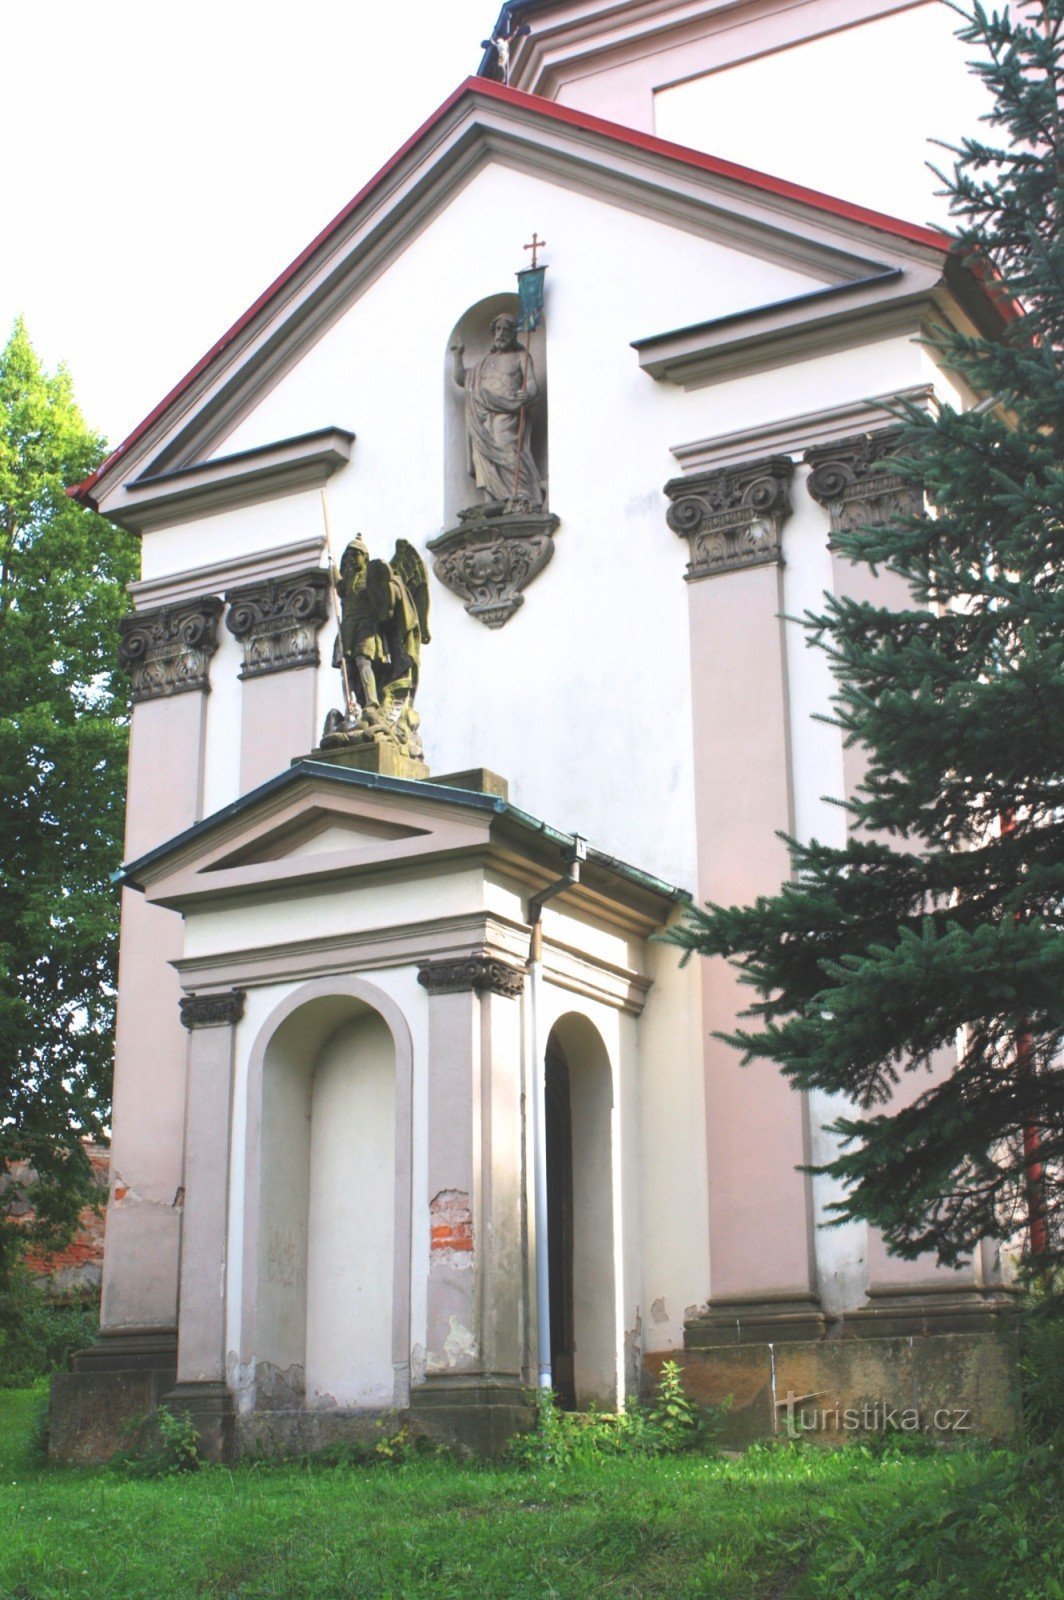 Ústí nad Orlicí - Église de l'Assomption de la Vierge Marie